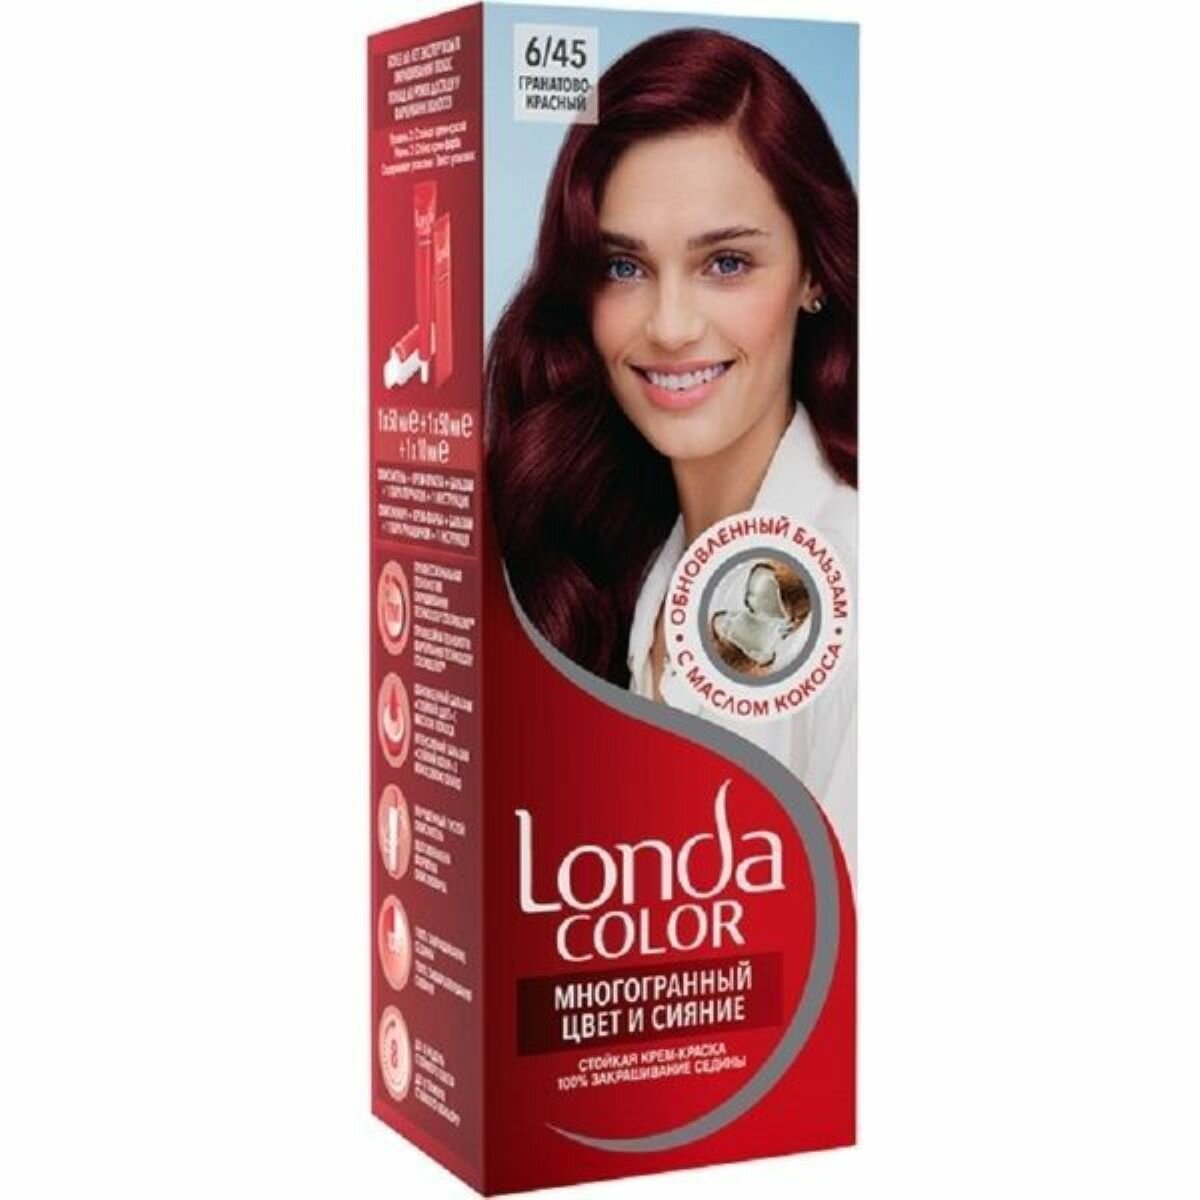 Londa Color Крем-краска стойкая 6/45 Гранатово-красный